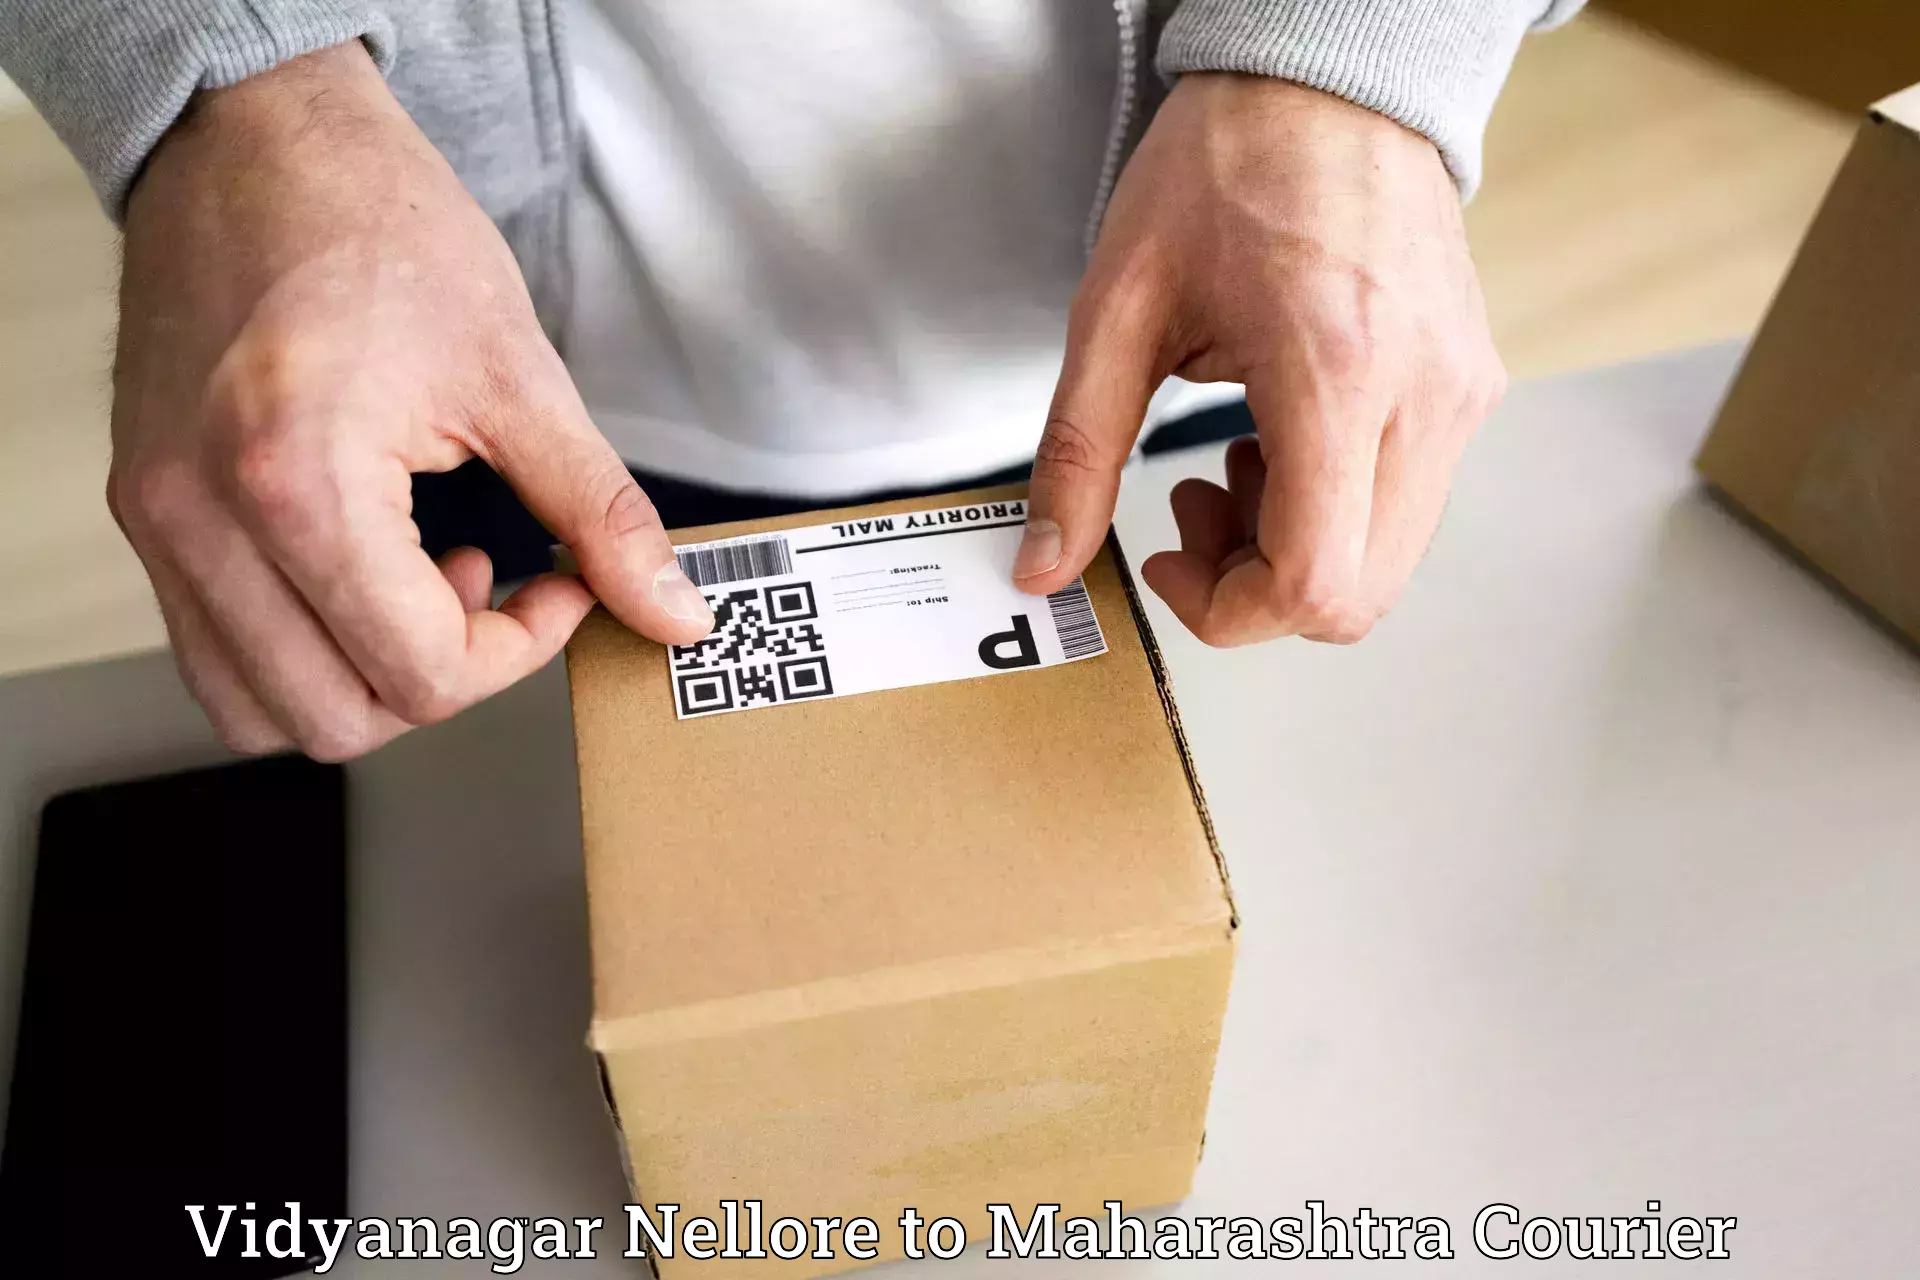 Premium courier solutions Vidyanagar Nellore to Worli